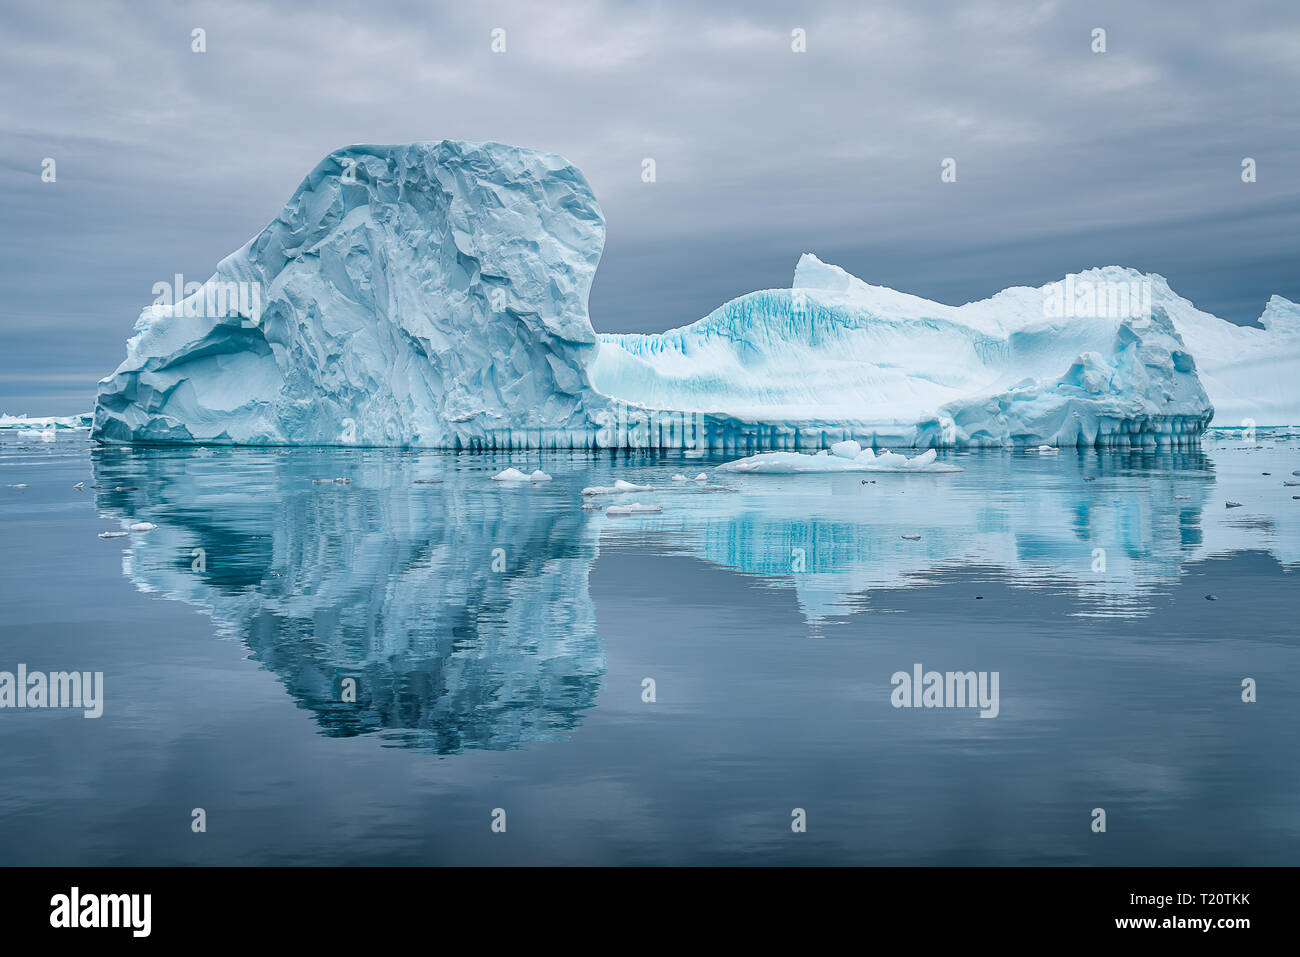 Un iceberg étonnant dans le cimetière de glace en Antarctique, provoquant une belle réflexion sur la surface de l'eau alors que dans un zodiaque Banque D'Images